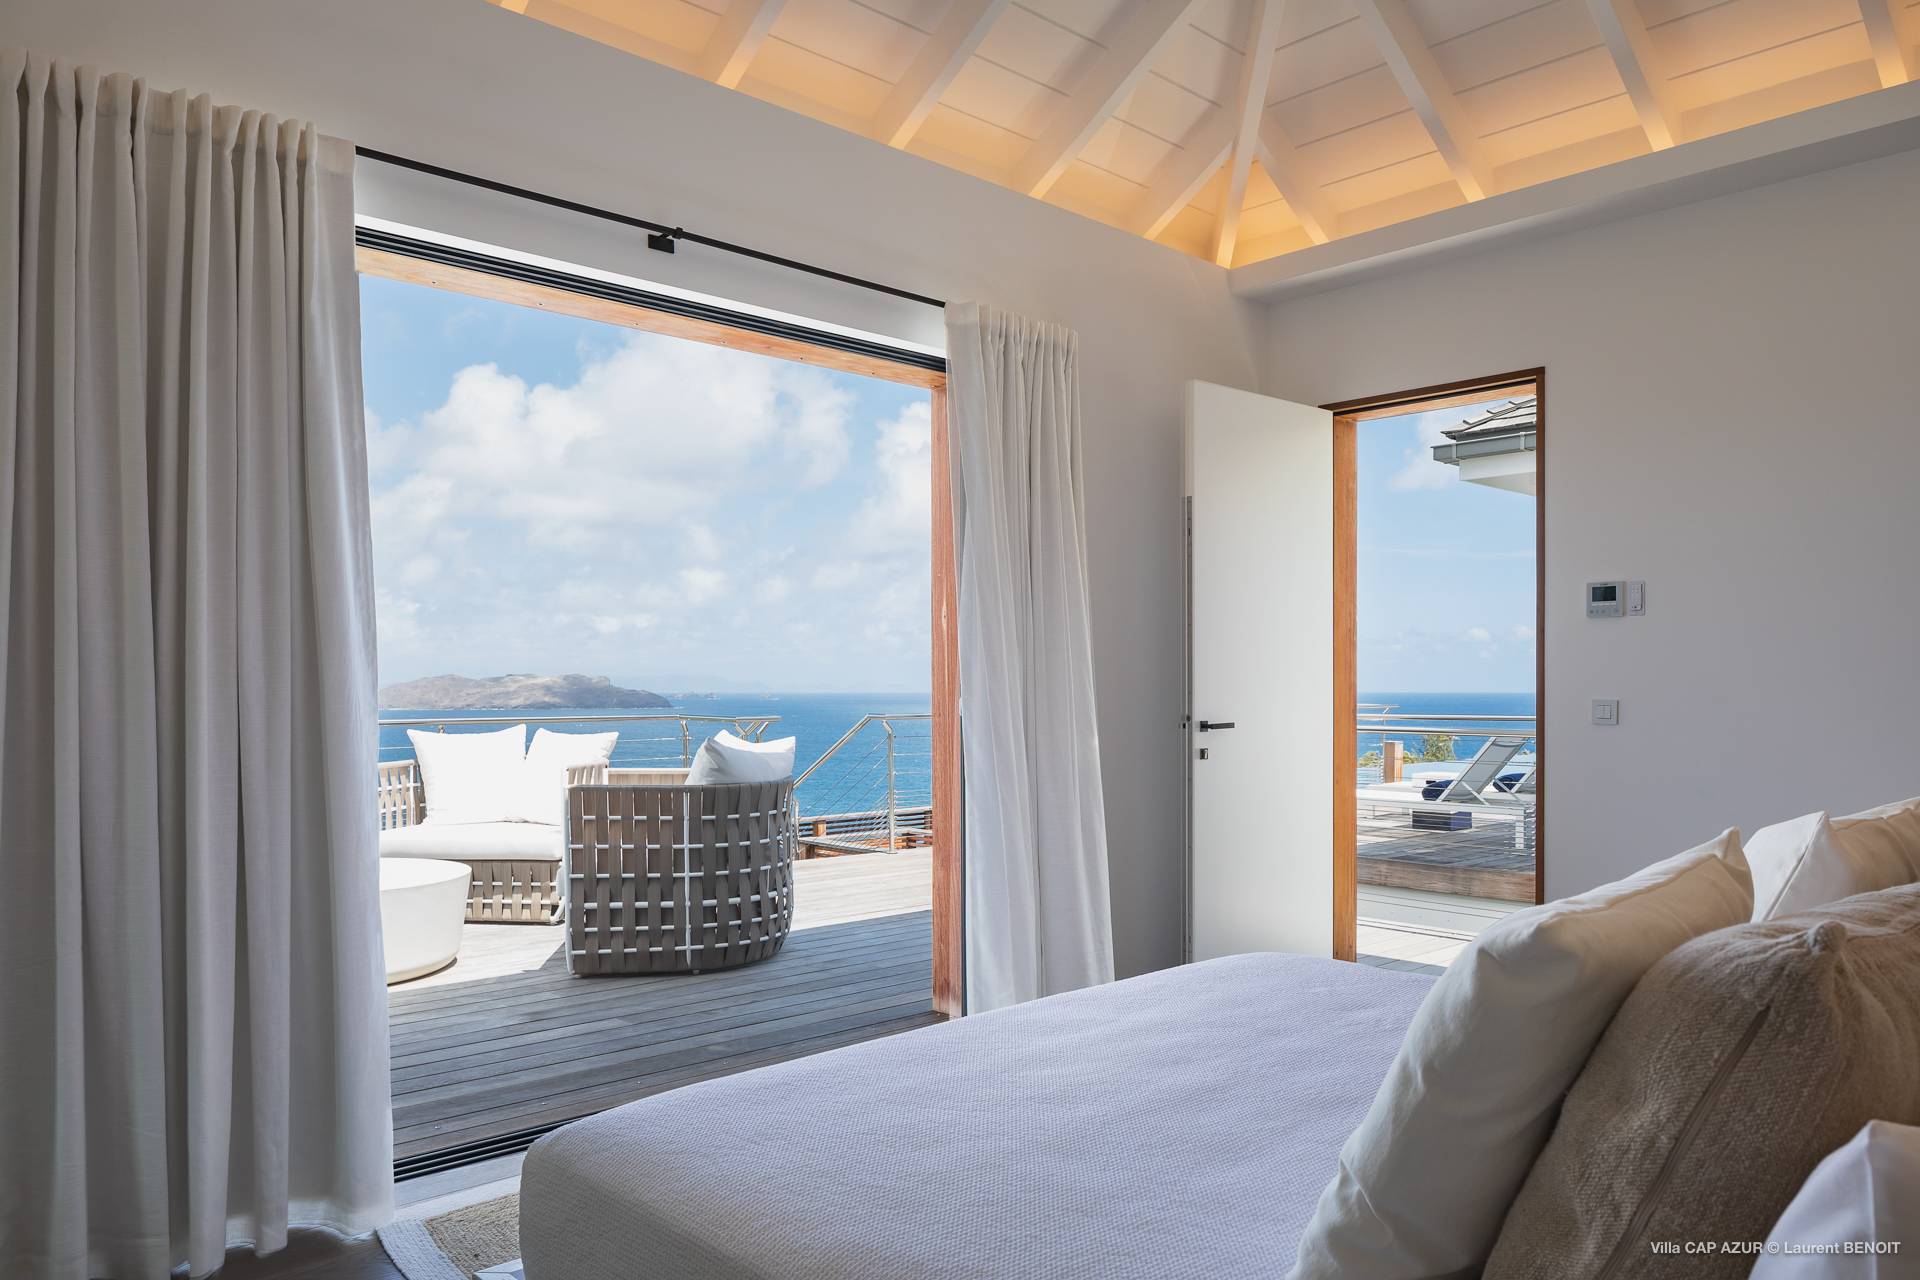 Villa Cap Azur Bedroom 2